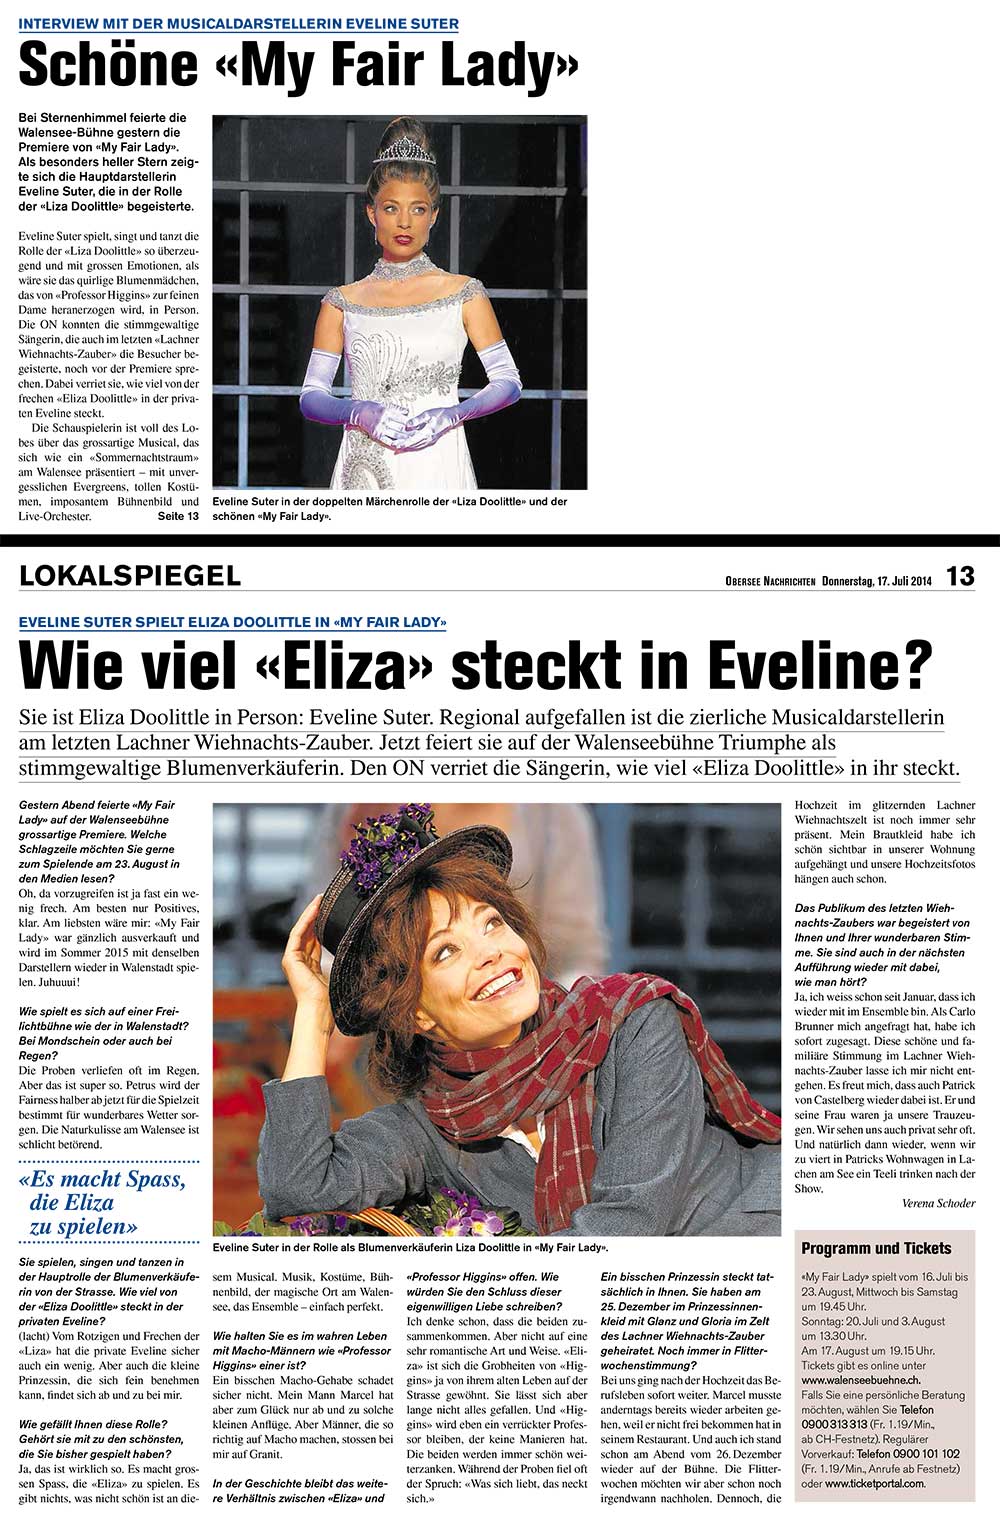 Obersee Nachrichten / Juli 2014